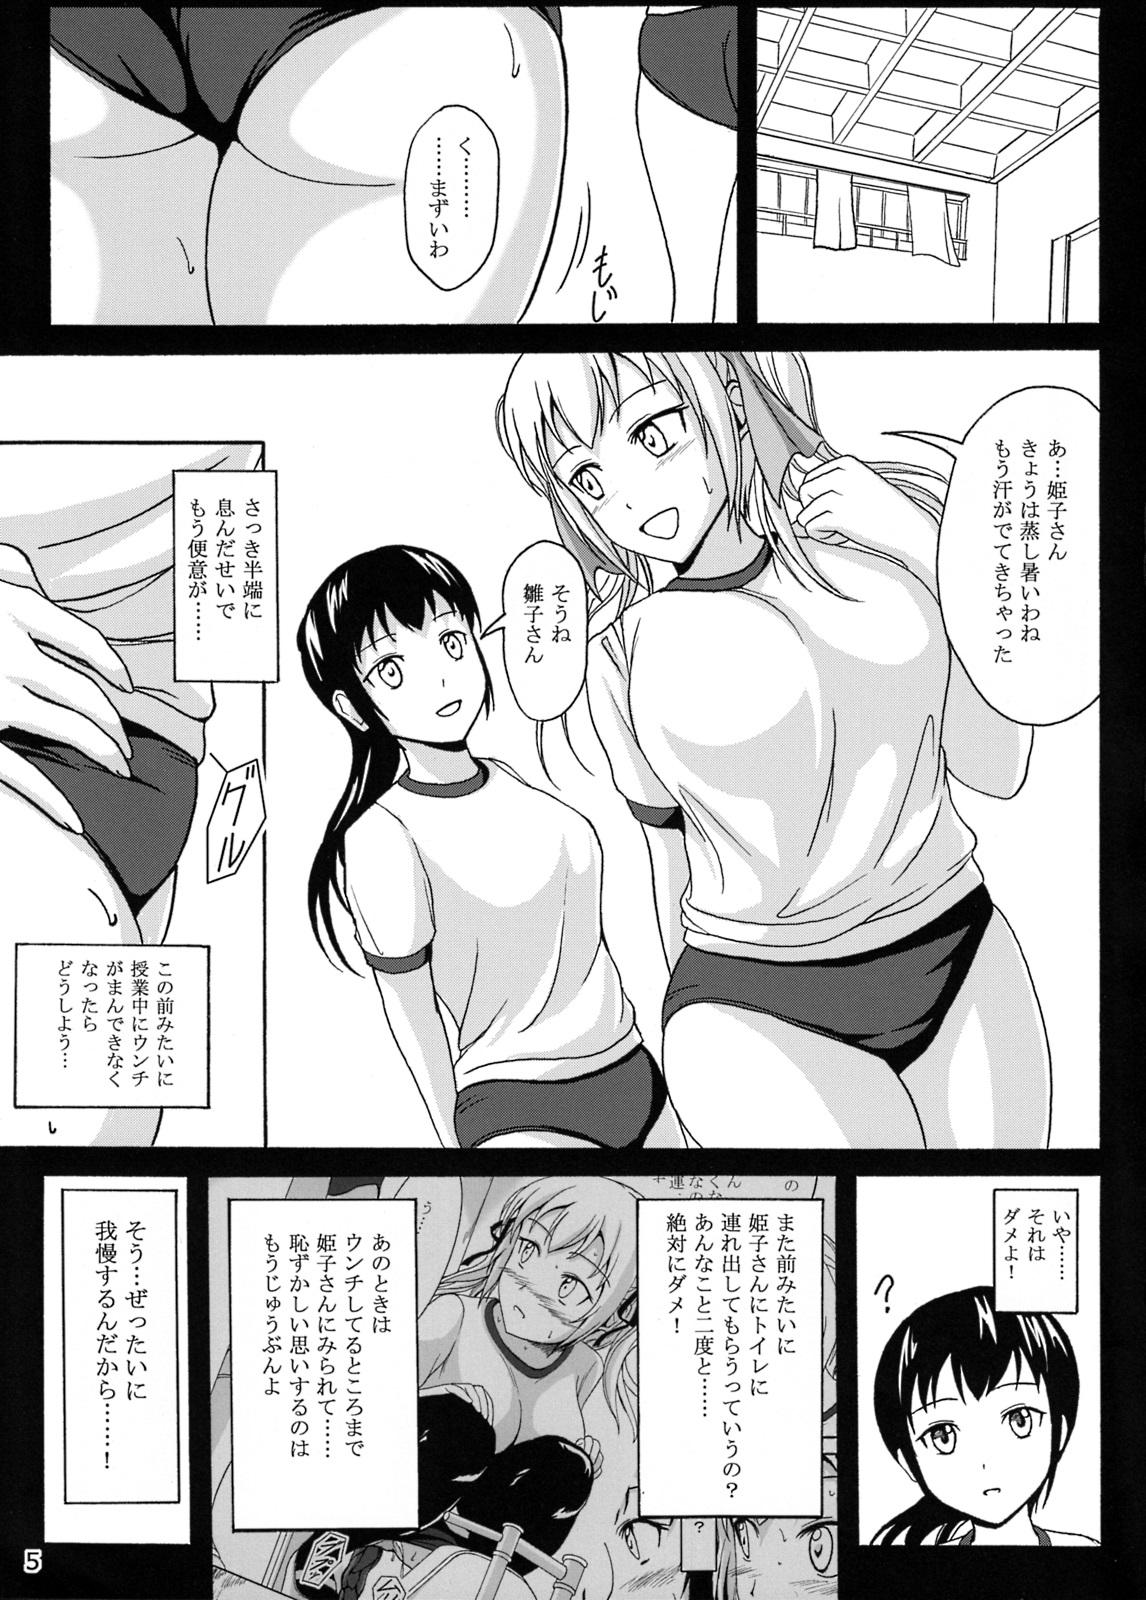 Topless Haisetsu Shoujo 7 Hinako no Shippai Shecock - Page 5